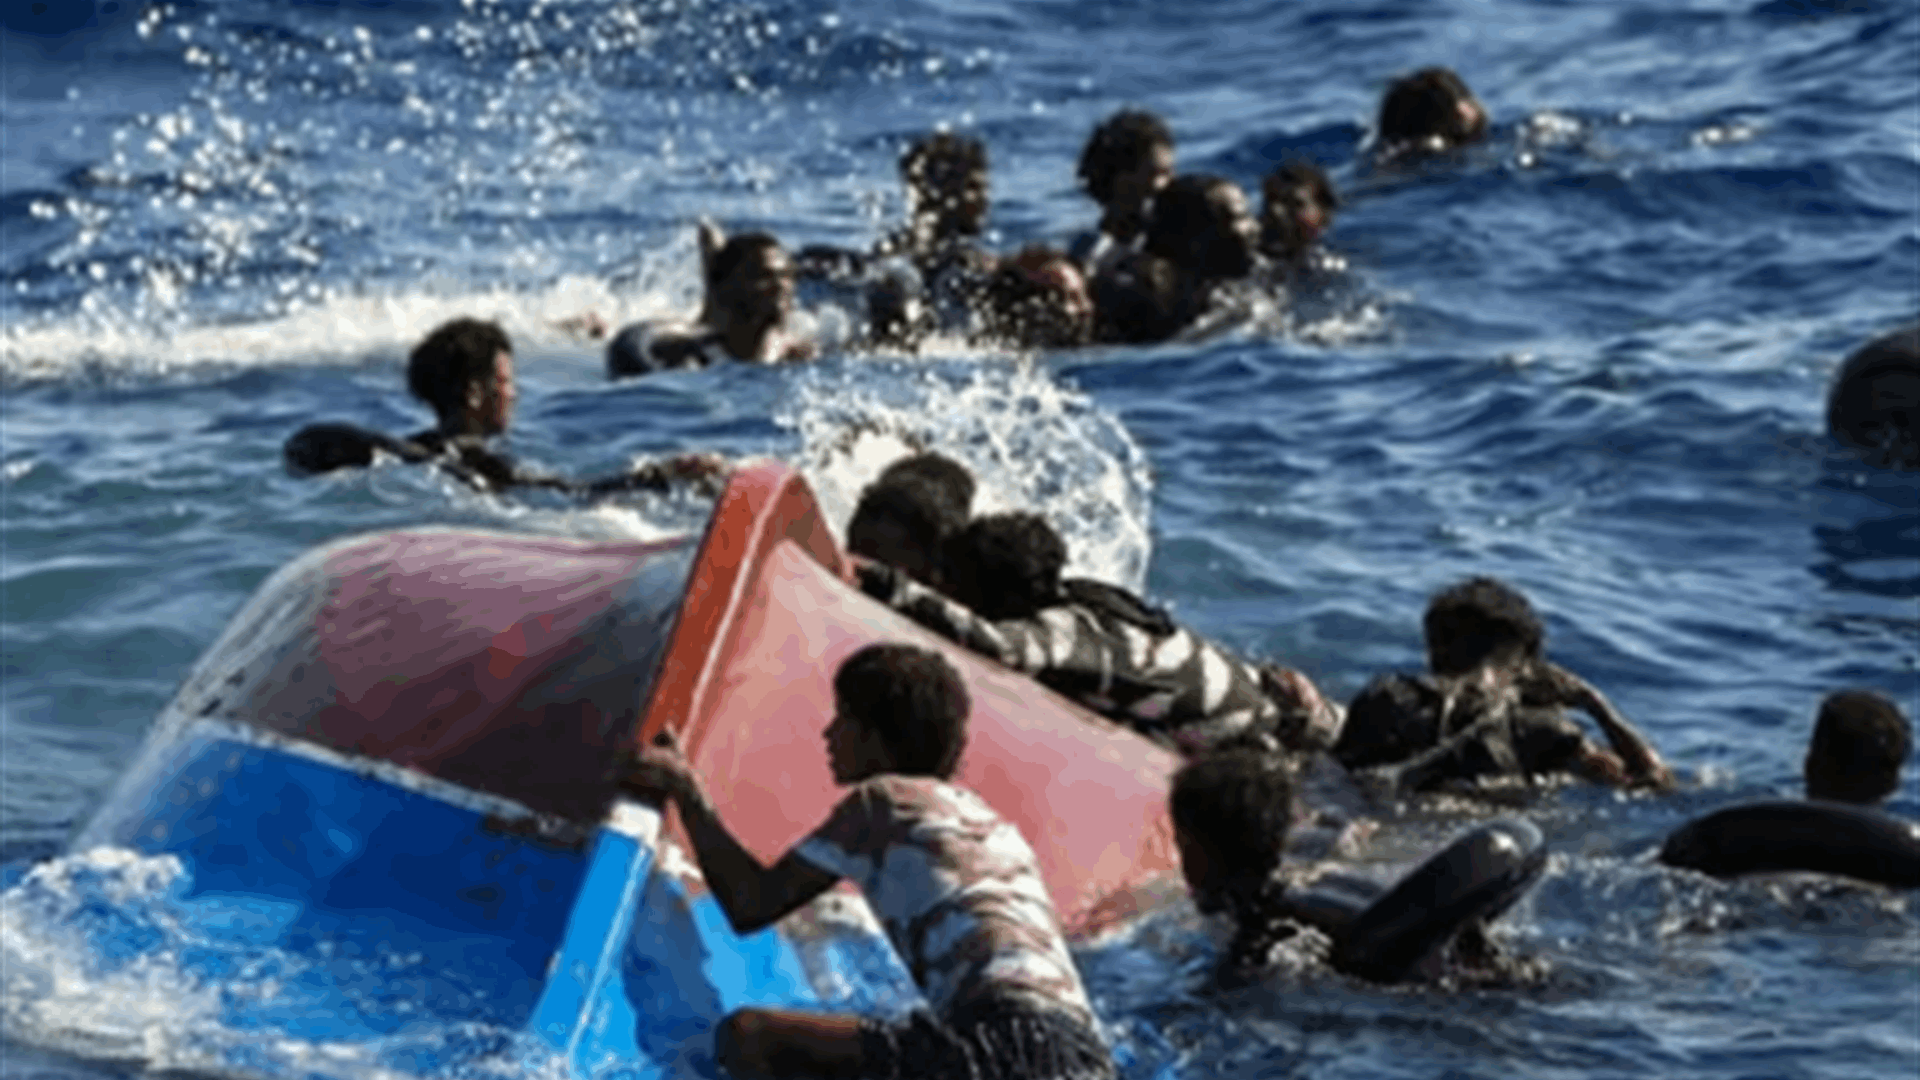 كردستان العراق يعلن توقيف أربعة مهرّبين في إطار حادثة غرق قارب قبالة إيطاليا